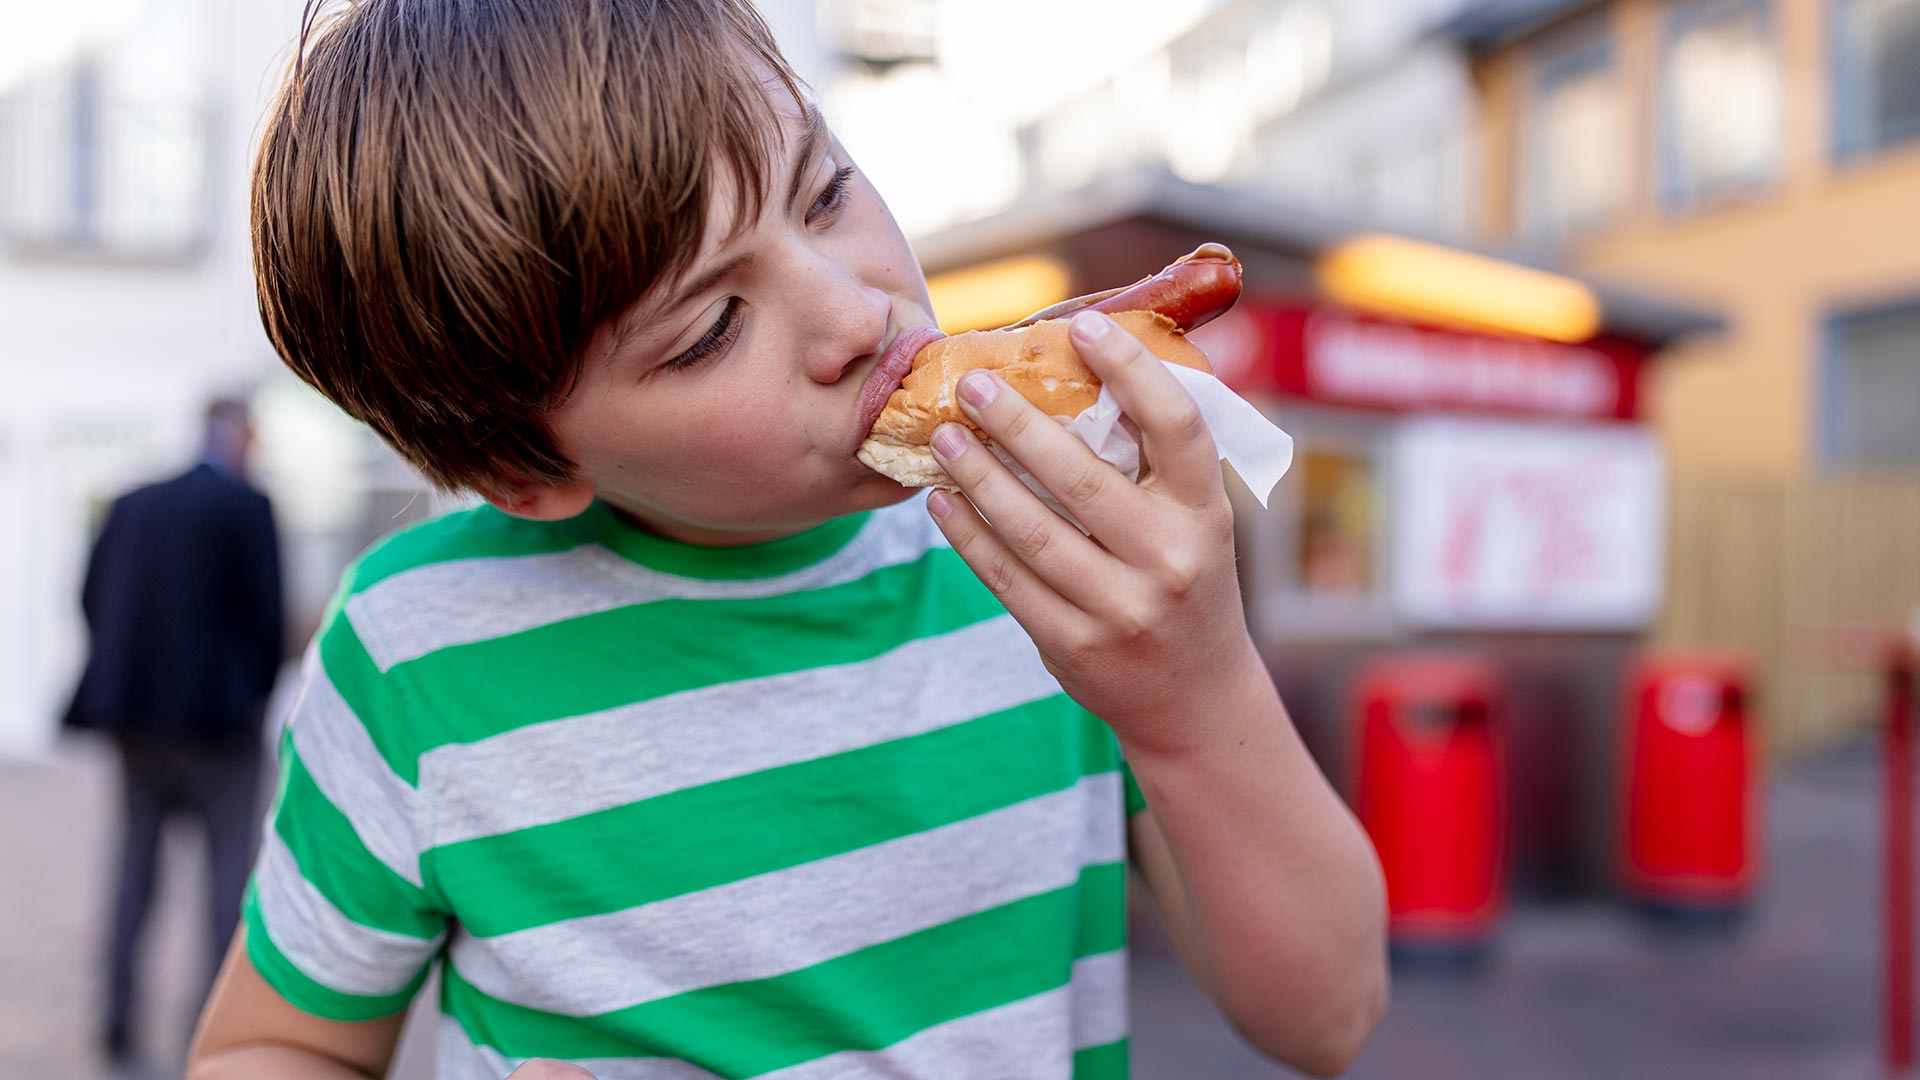 Las tasas de obesidad infantil crecen al ritmo del aumento del consumo de alimentos procesados